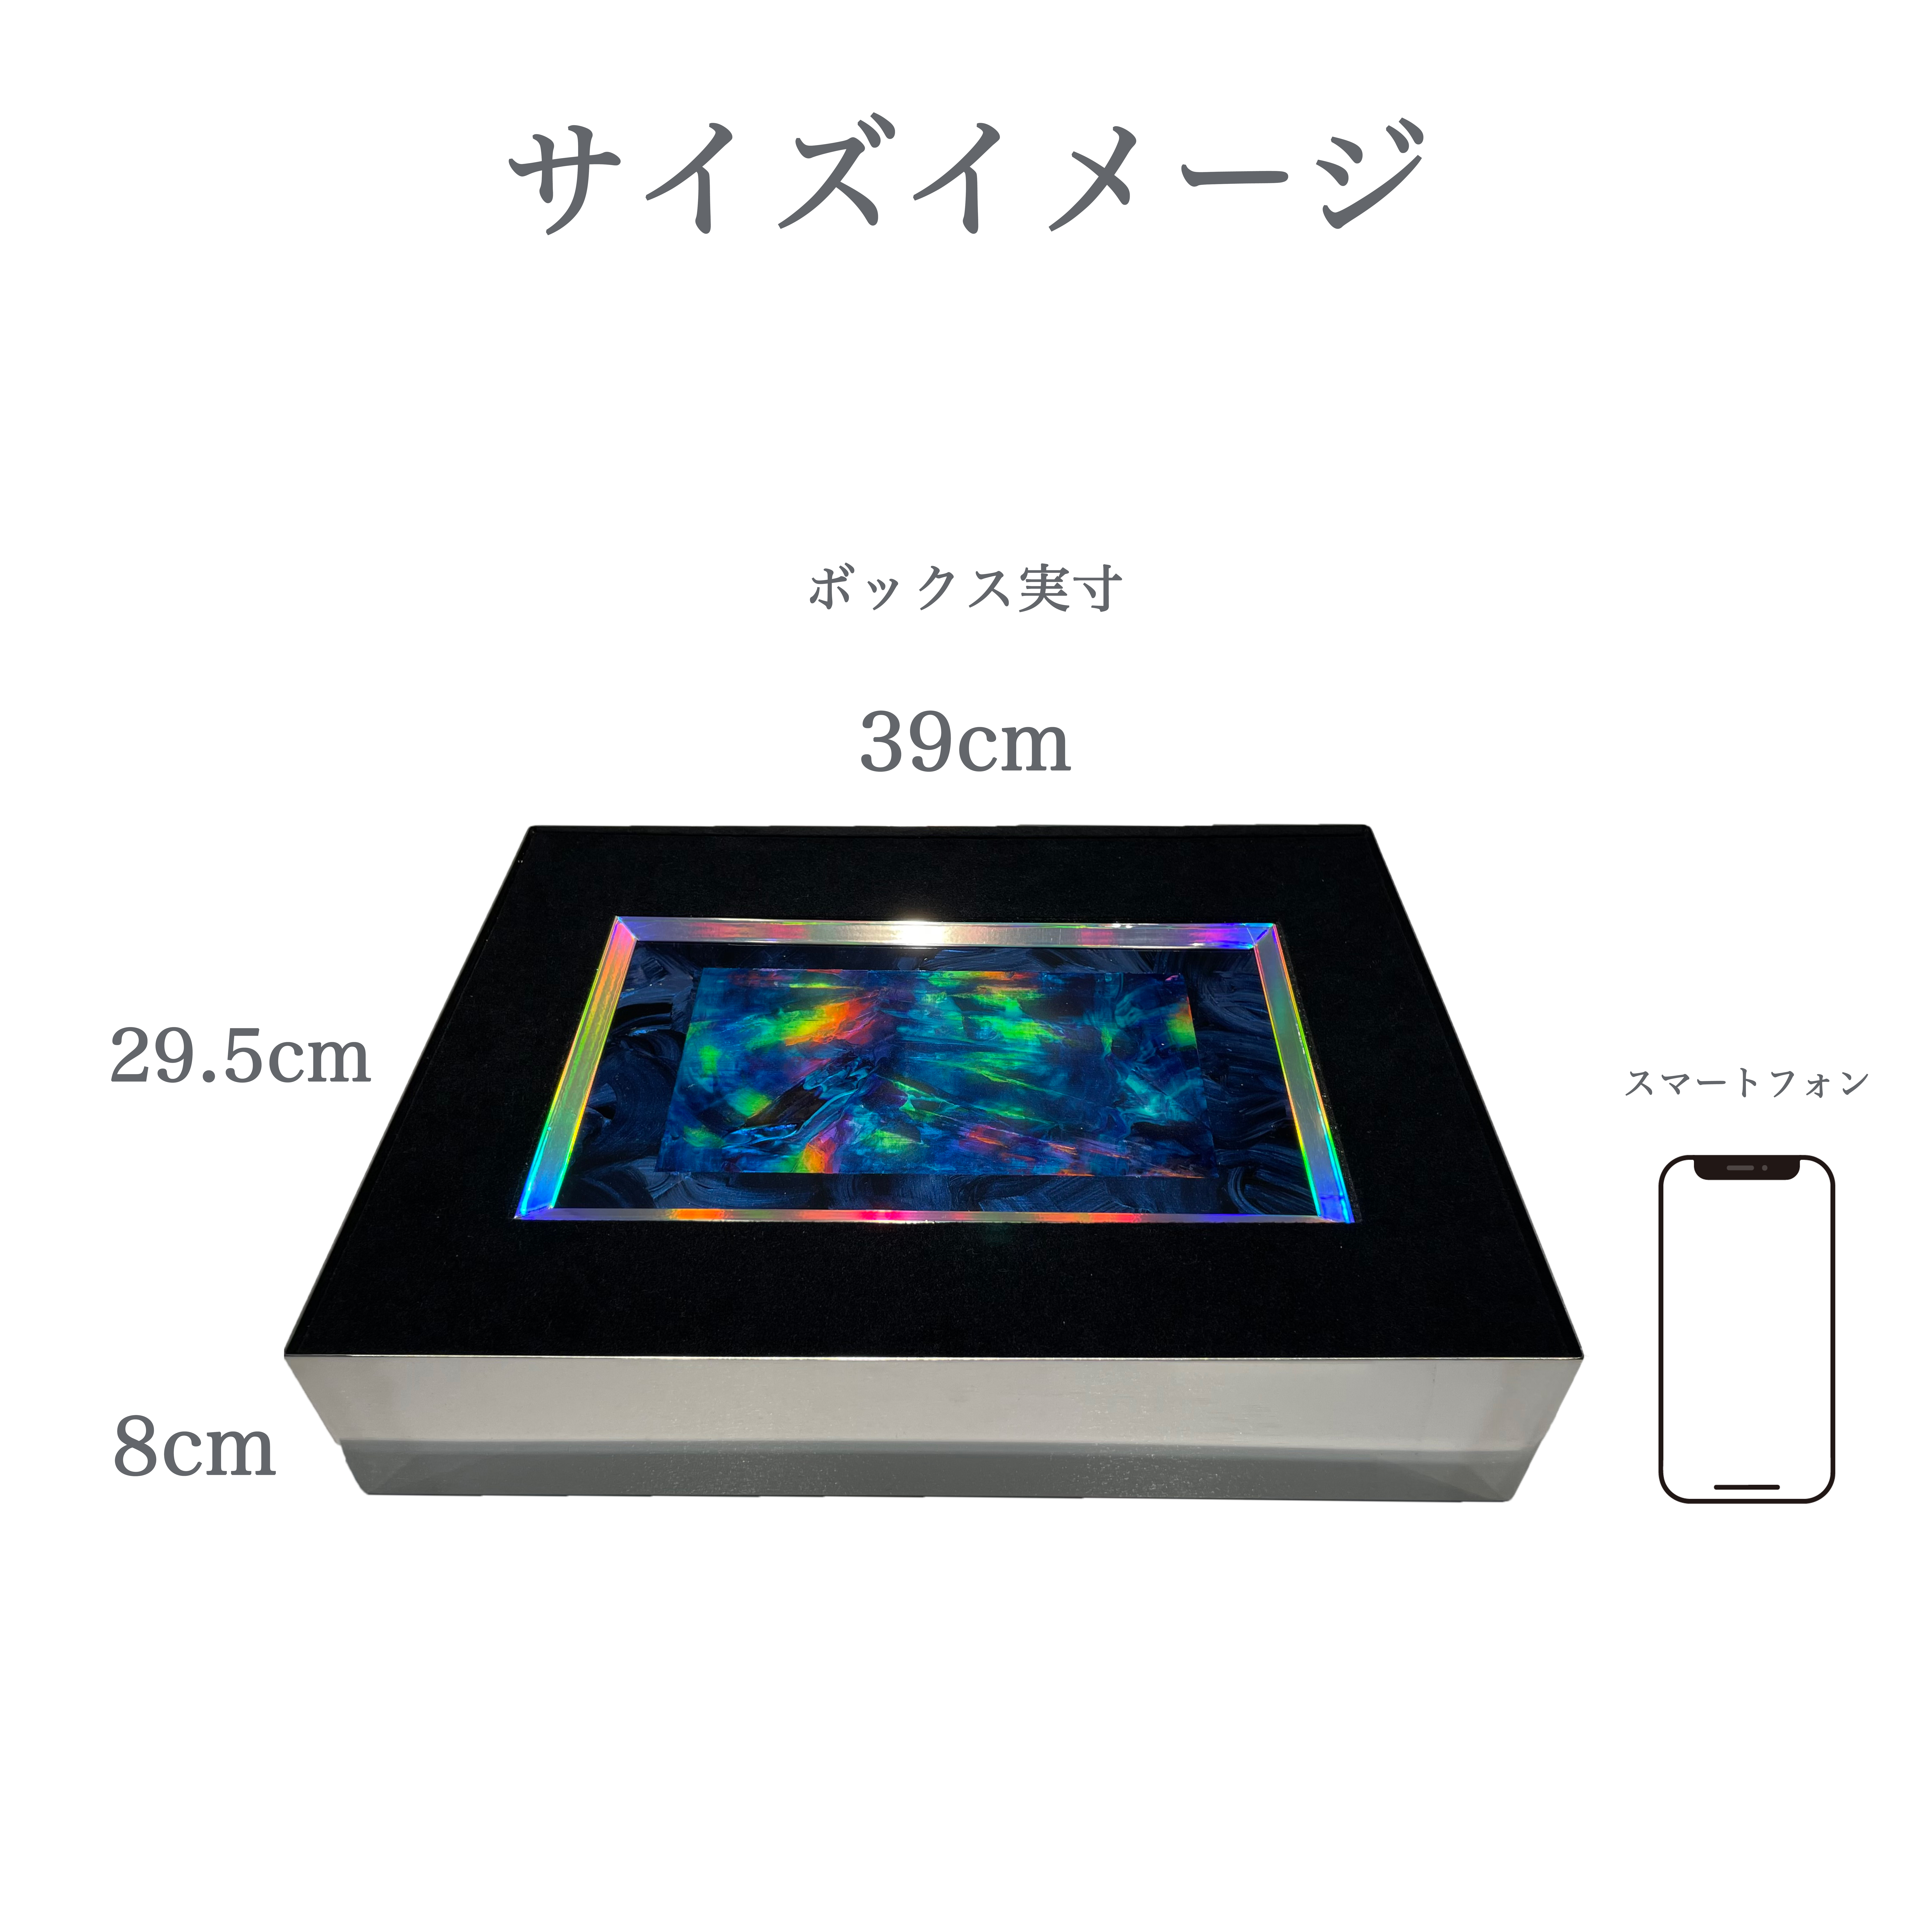 【特別企画】"YURAGI Display Box"